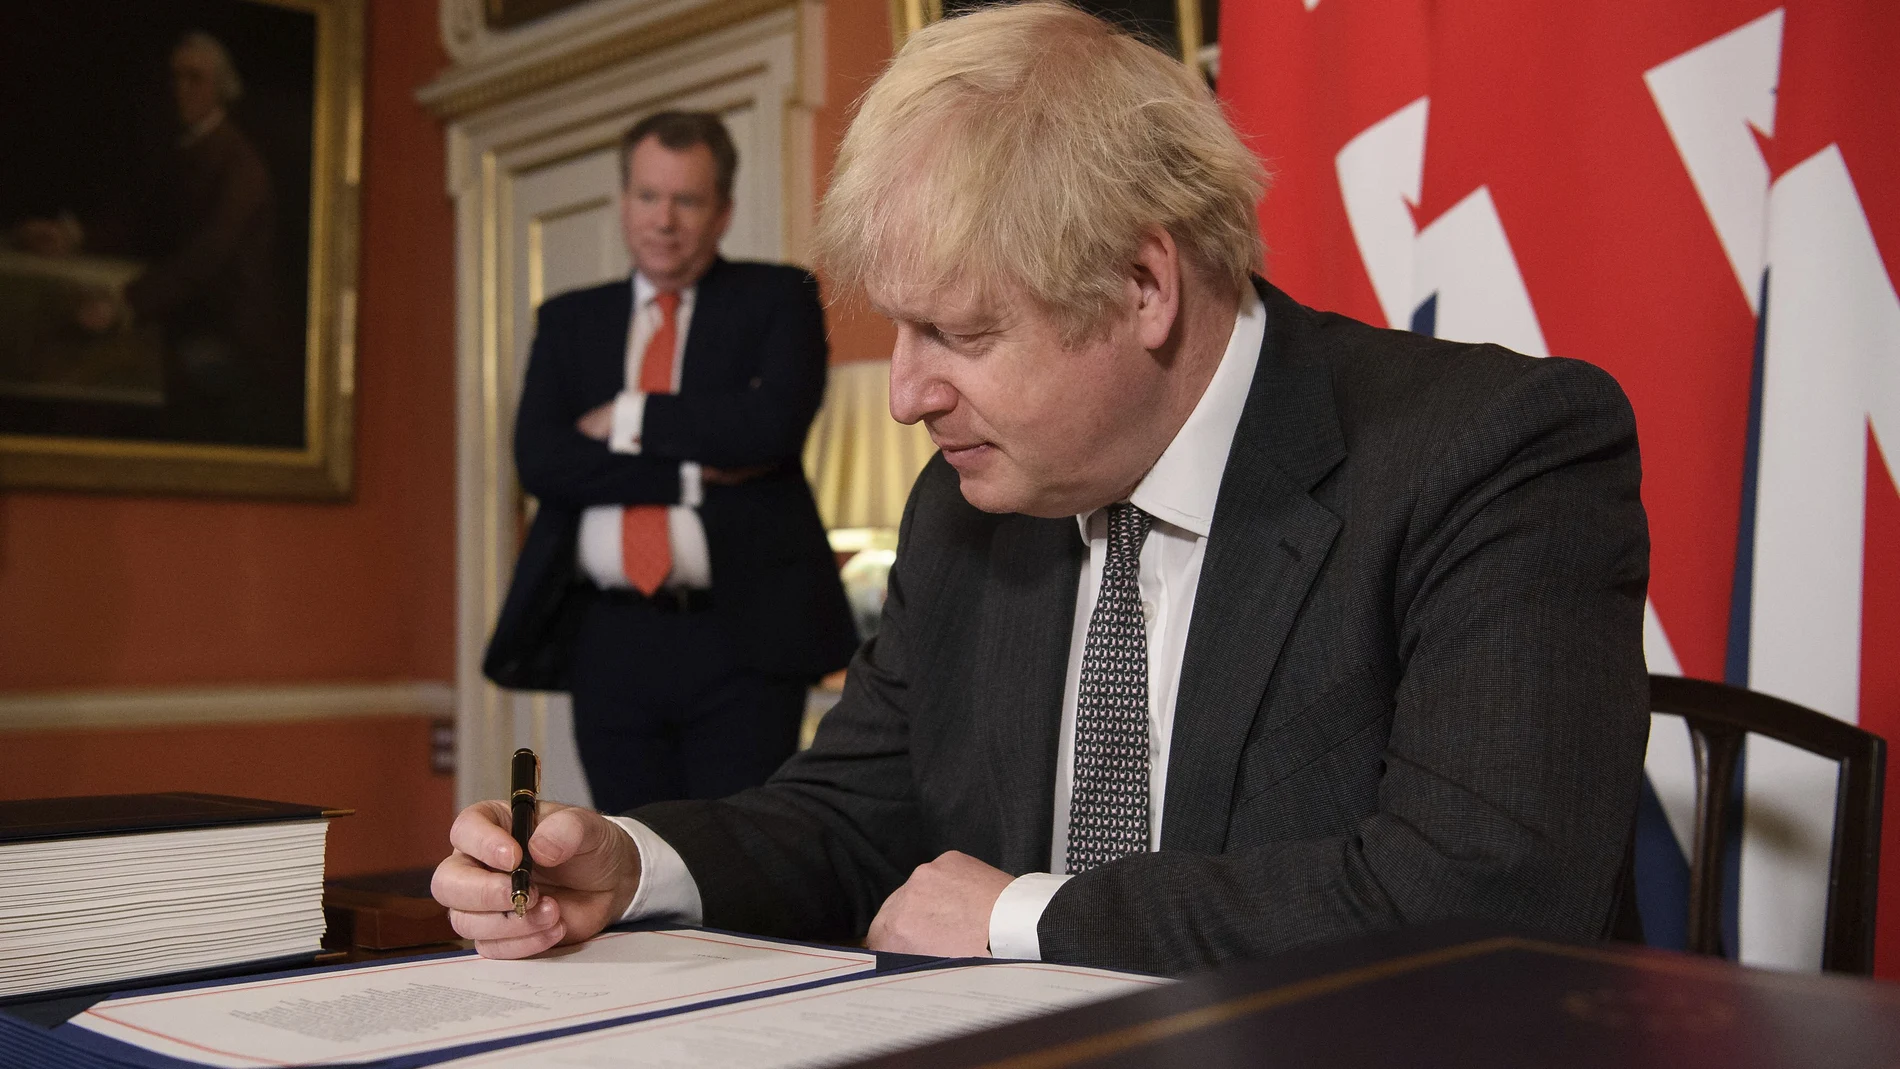 El primer ministro británico Boris Johnson firma el acuerdo comercial con la Unión Europea.